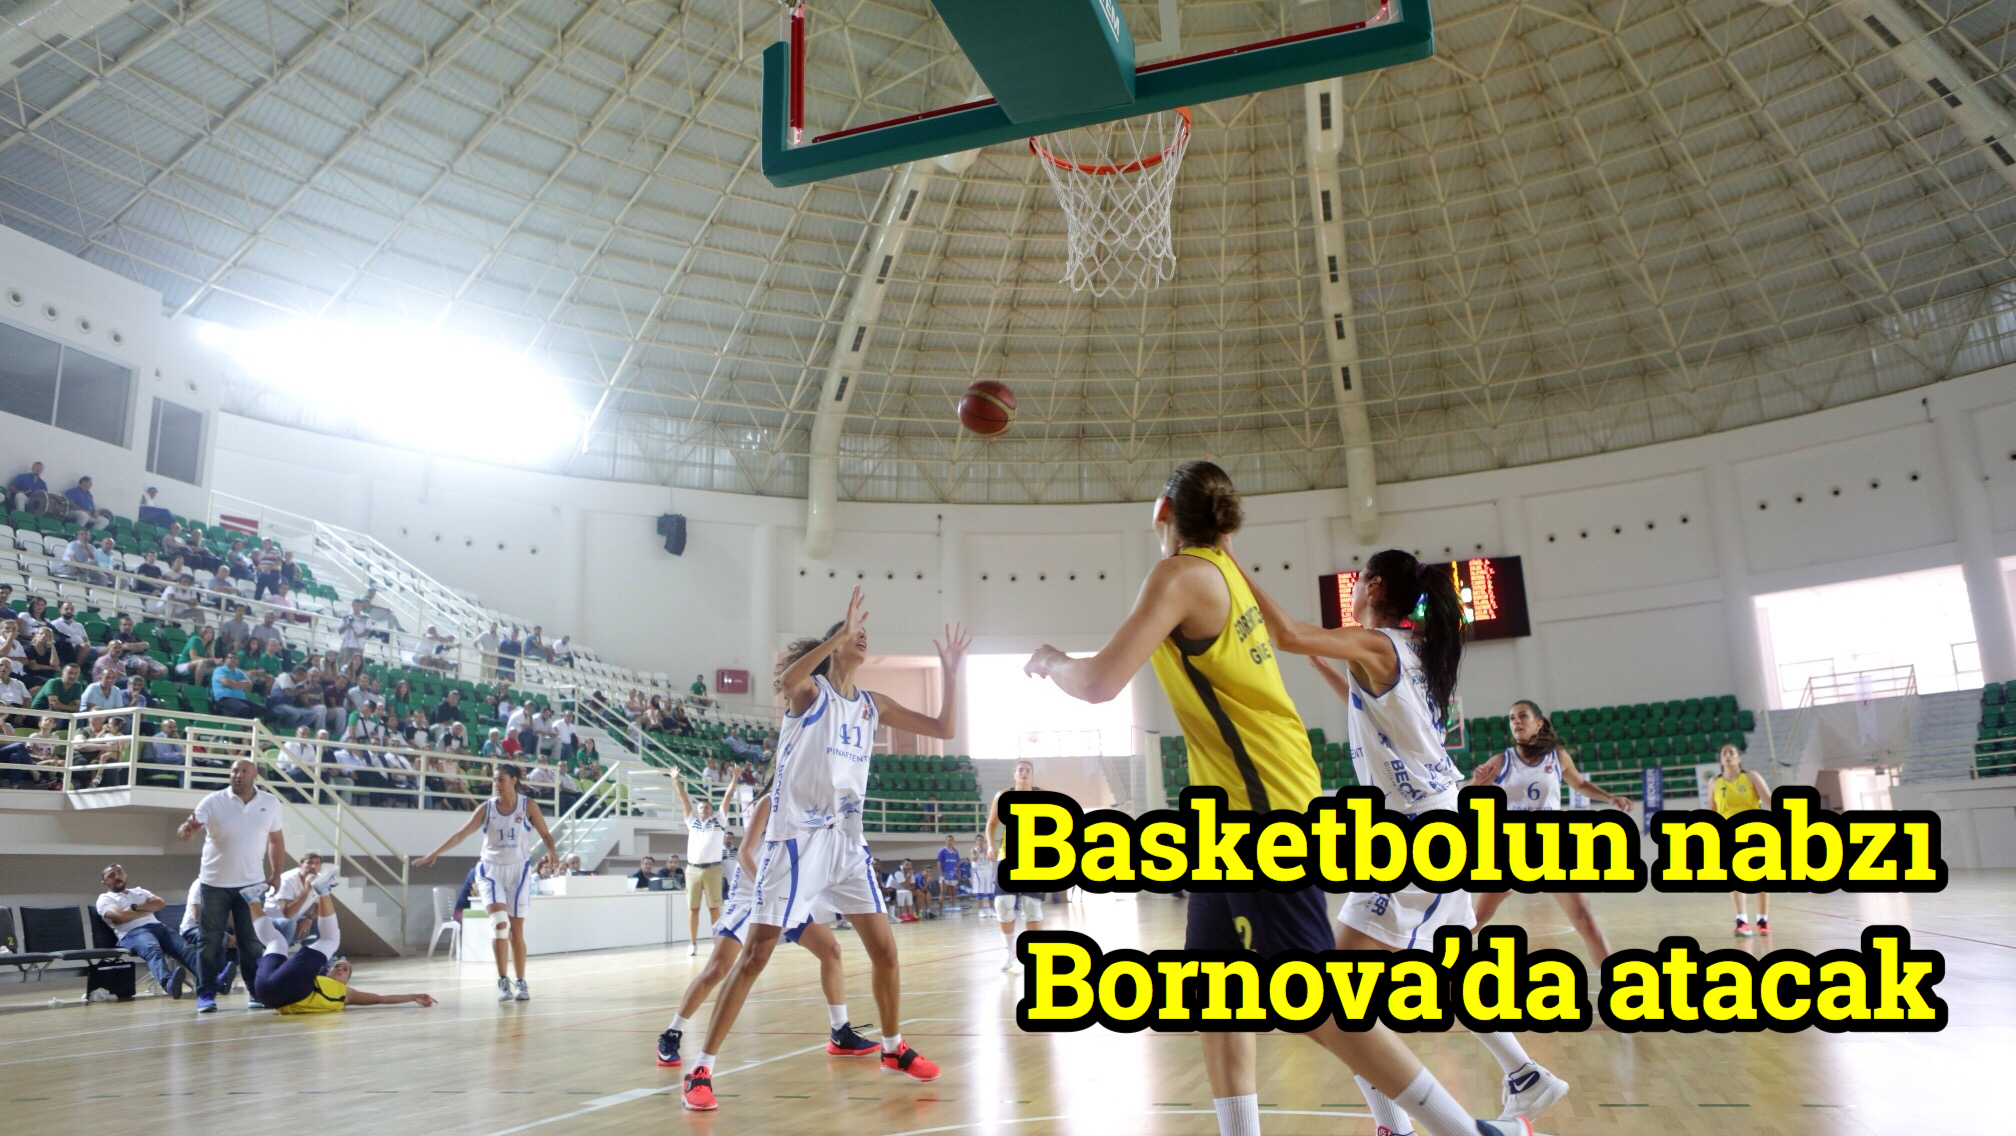 Basketbolun nabzı Bornova’da atacak